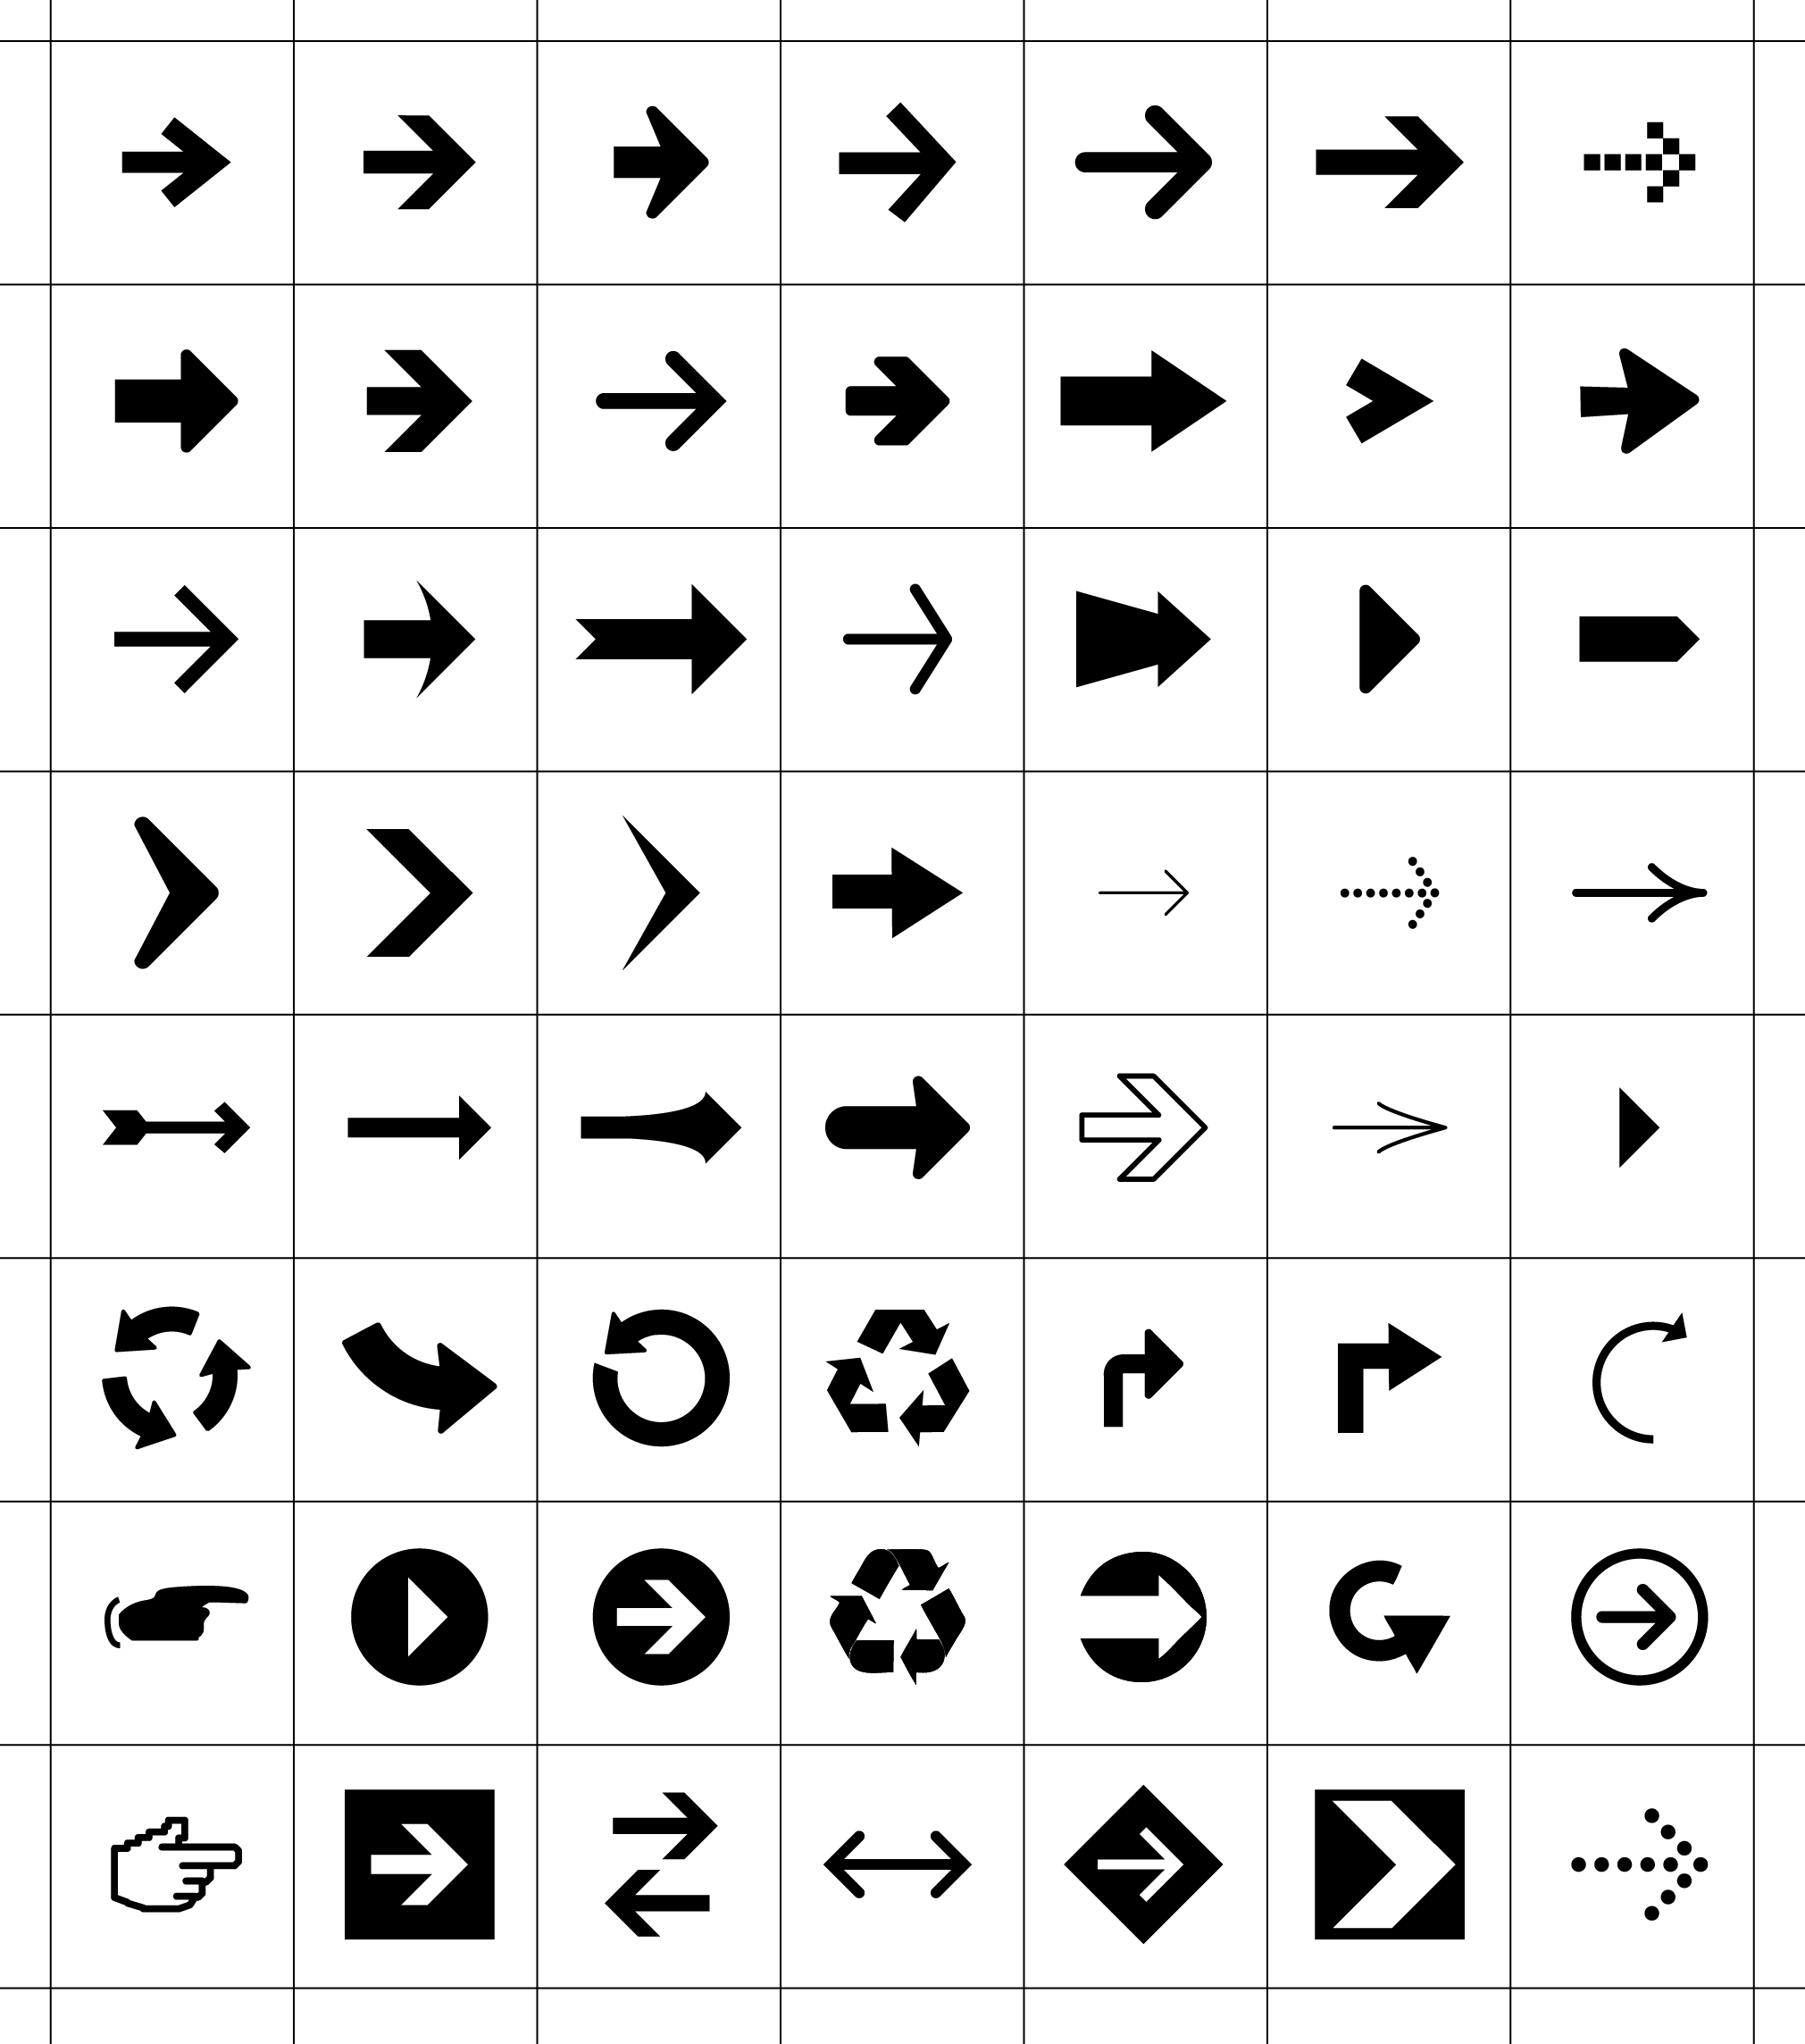 56 Vector pijlen en symbolen